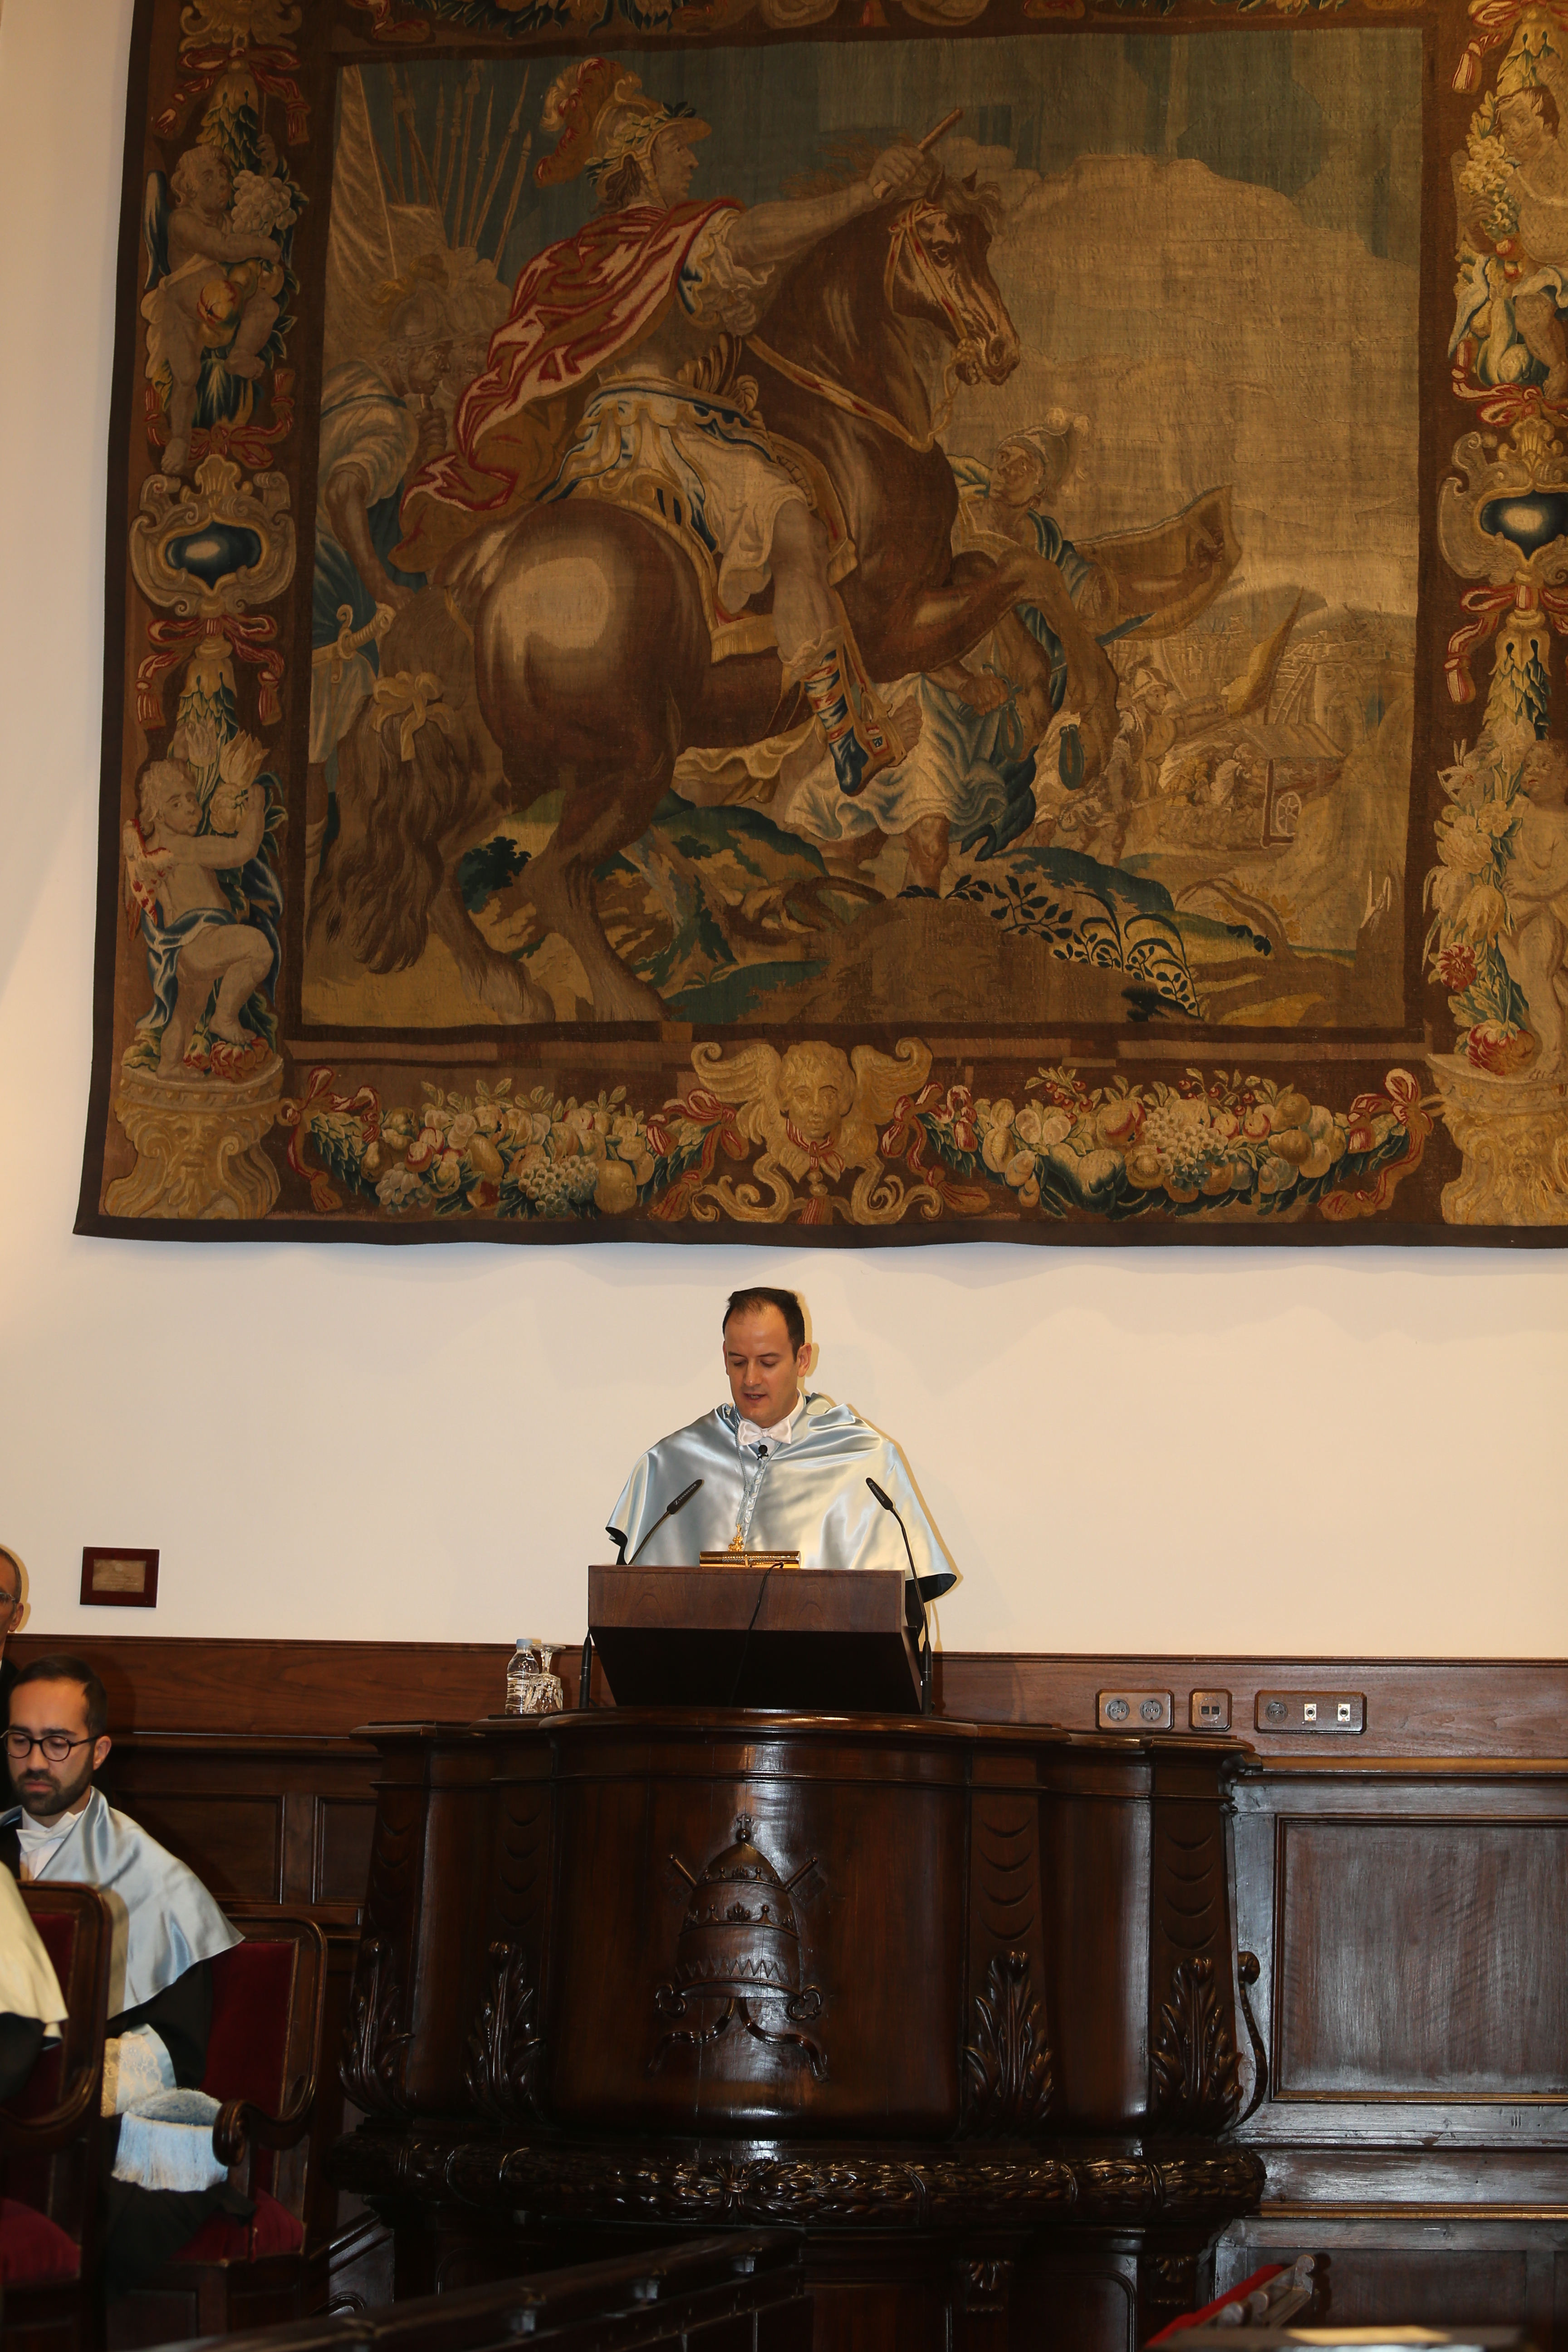 Plácido Domingo reivindica la presencia de la música en todos los niveles de la Educación al recibir el doctorado honoris causa por la Universidad de Salamanca